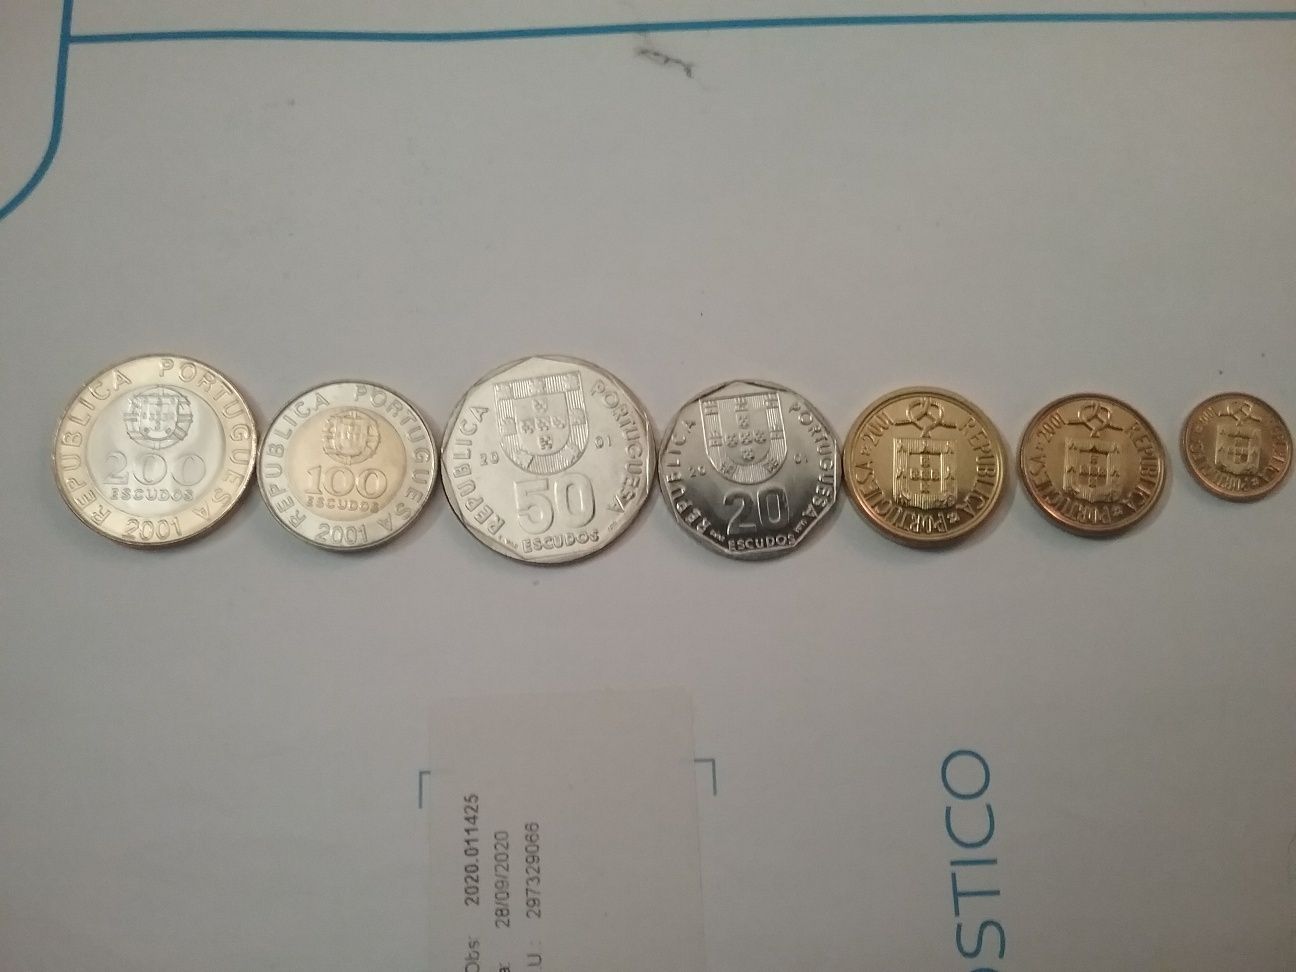 Vendo última série de moedas dó ano 2001 de Portugal